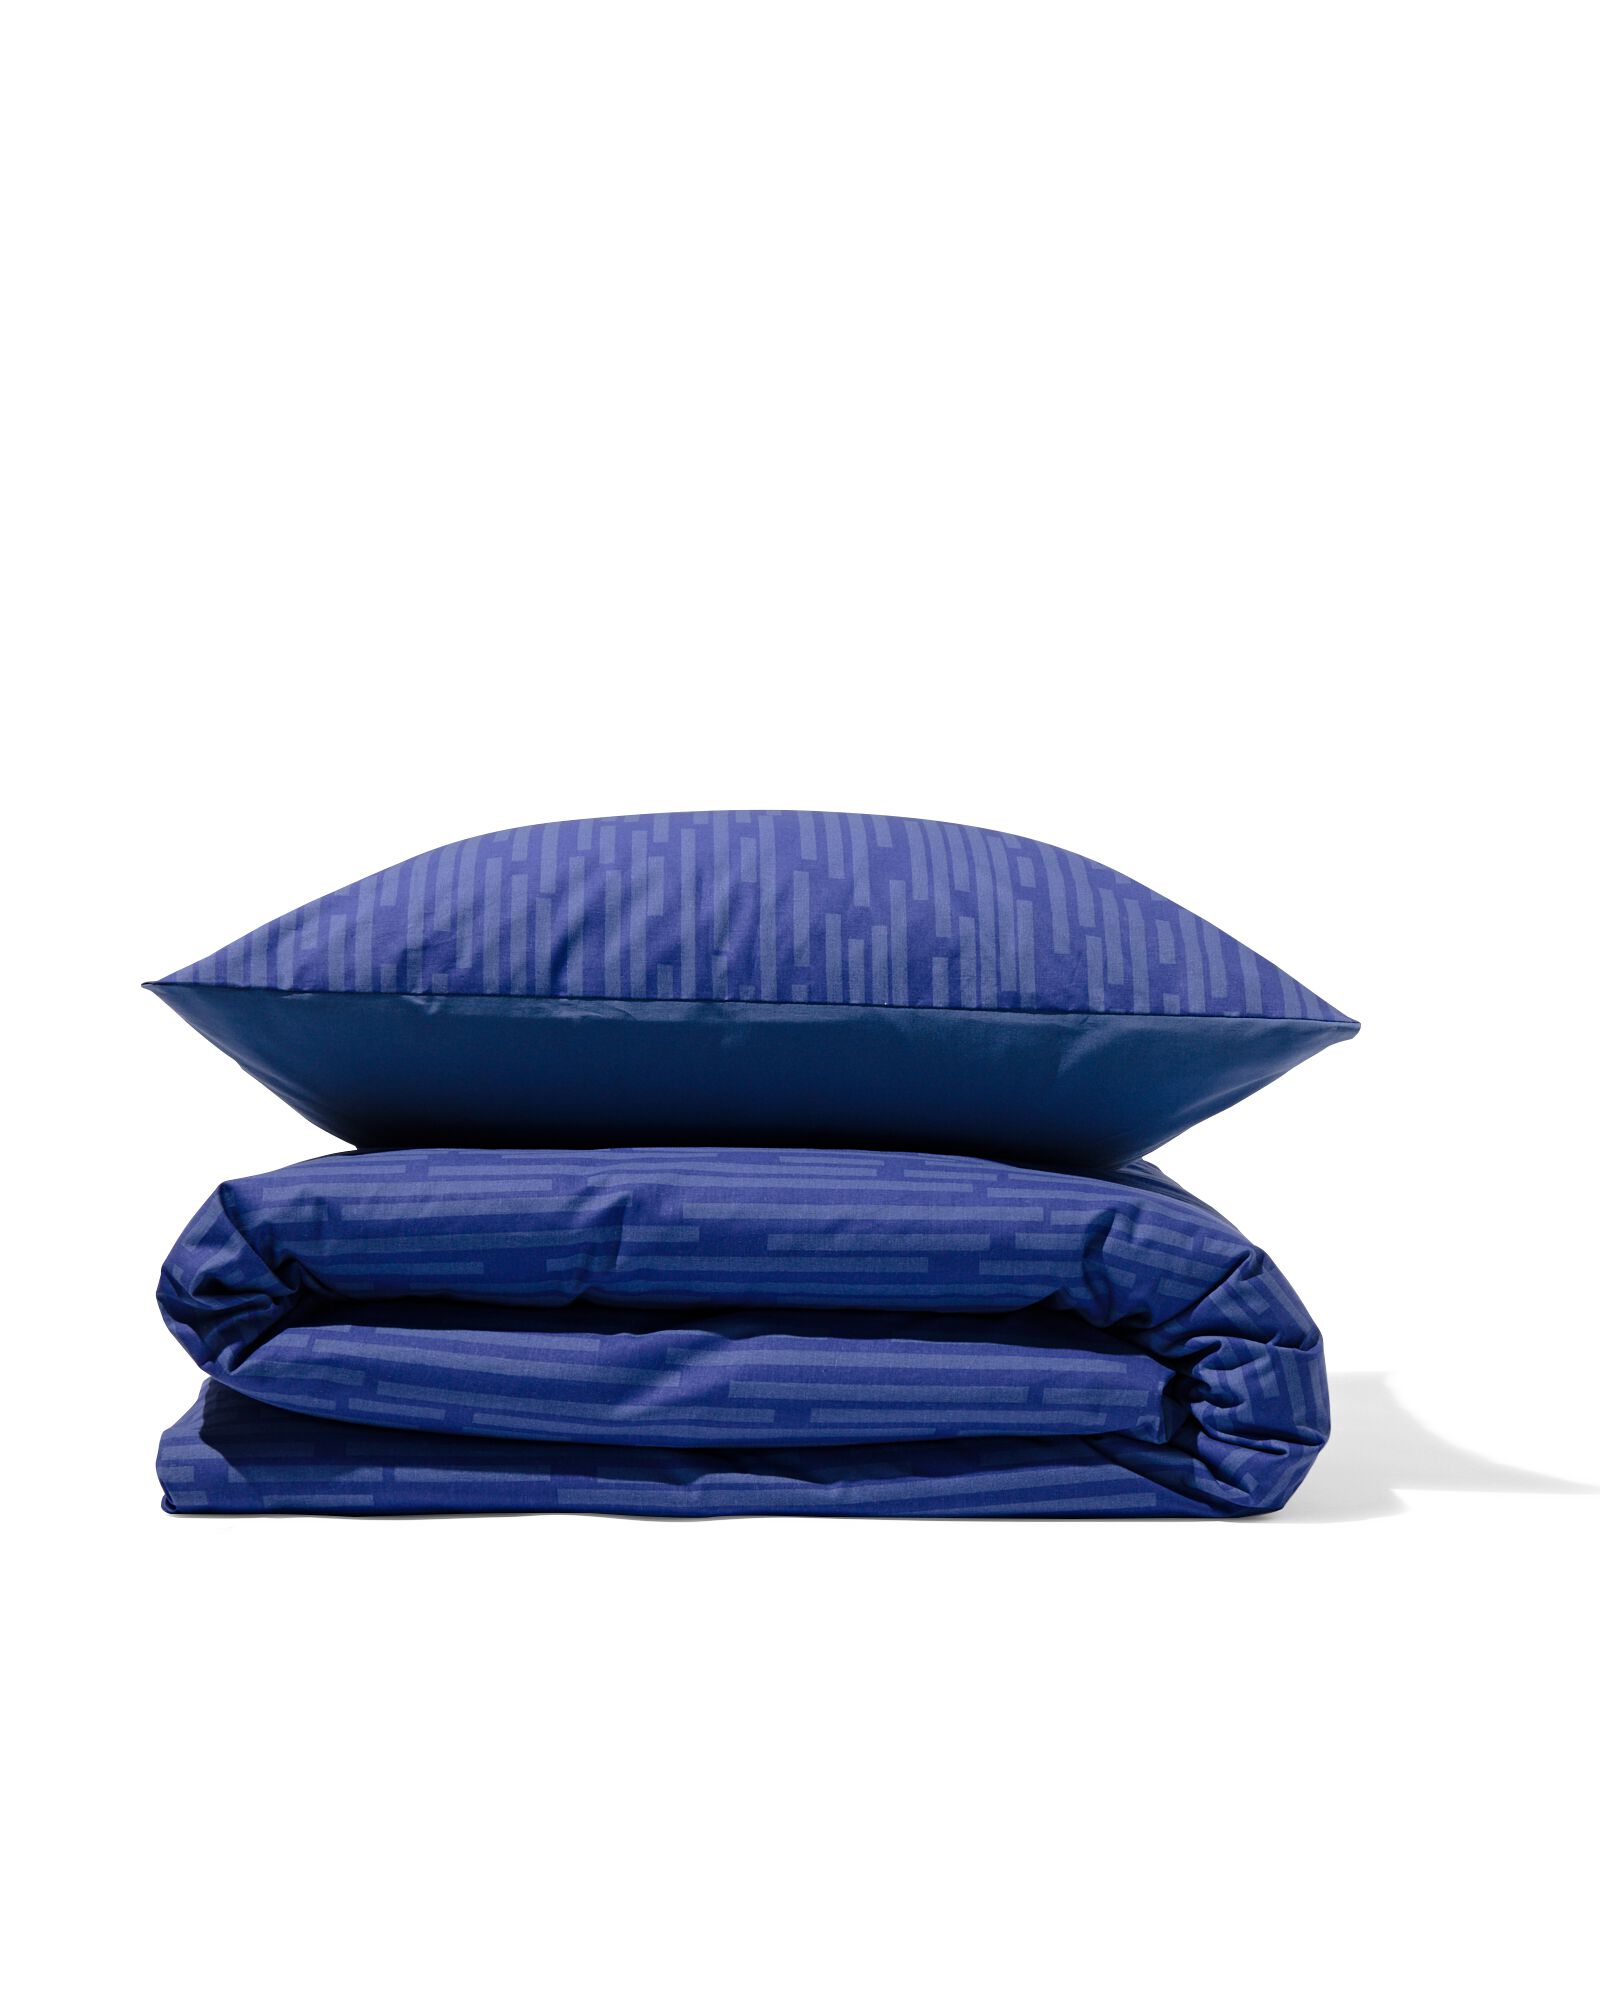 Bettwäsche, Soft Cotton, 140 x 220 cm, Streifen, blau - 5730188 - HEMA